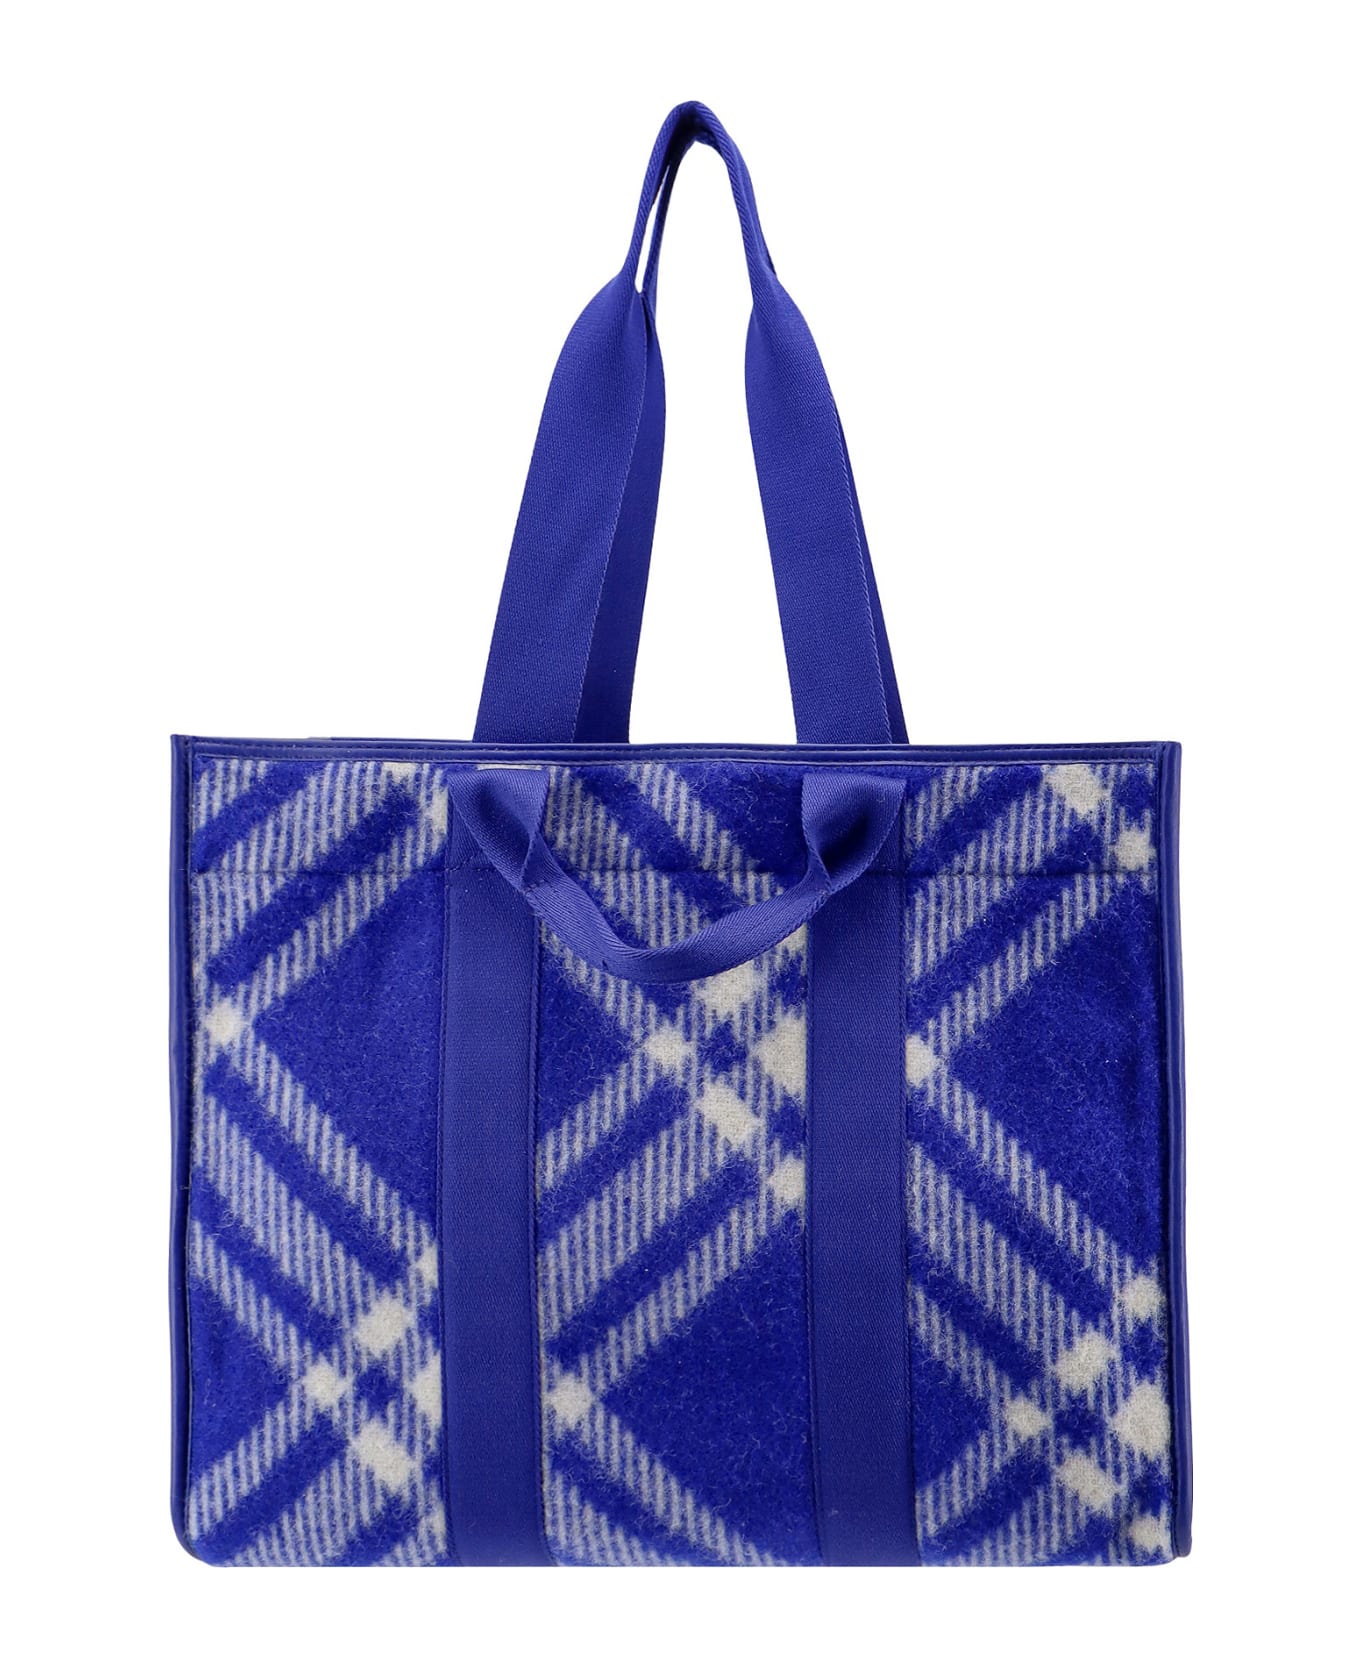 Burberry Shopper Tote Handbag - Blue トートバッグ